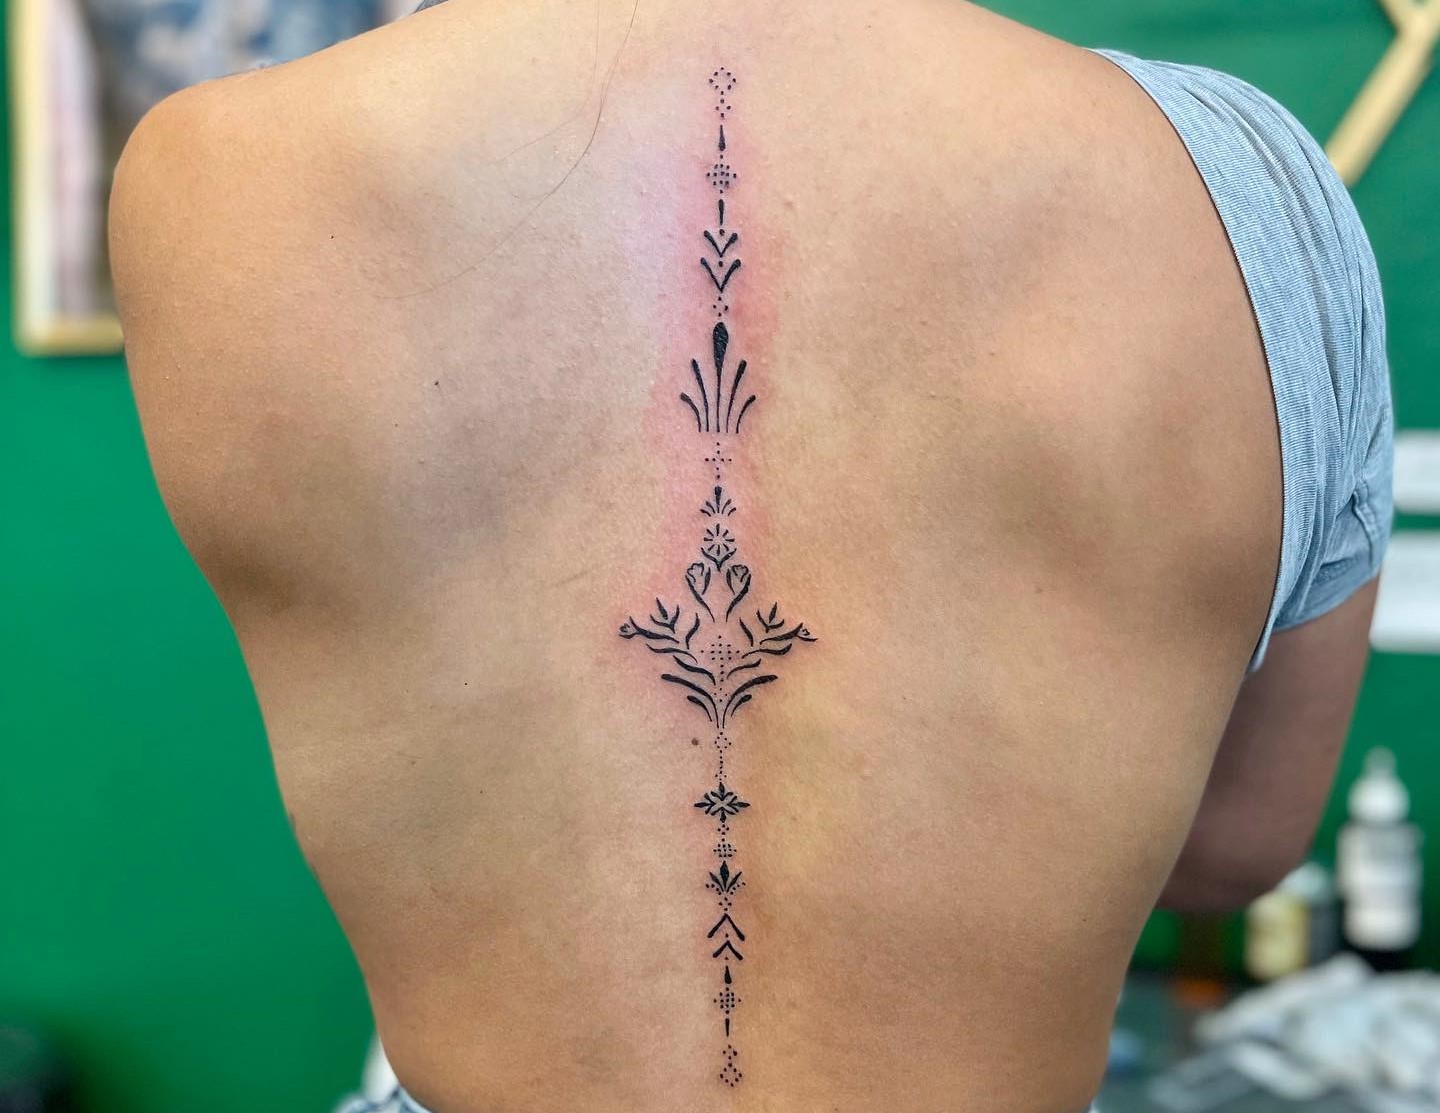 Tattoo uploaded by KTREW Tattoo • Hand-Poked Floral Spine Tattoo by  Pokeyhontas at KTREW Tattoo - Birmingham UK #spinetattoo #floraltattoo  #daffodil #holly #backtattoo #finelinetattoo • Tattoodo